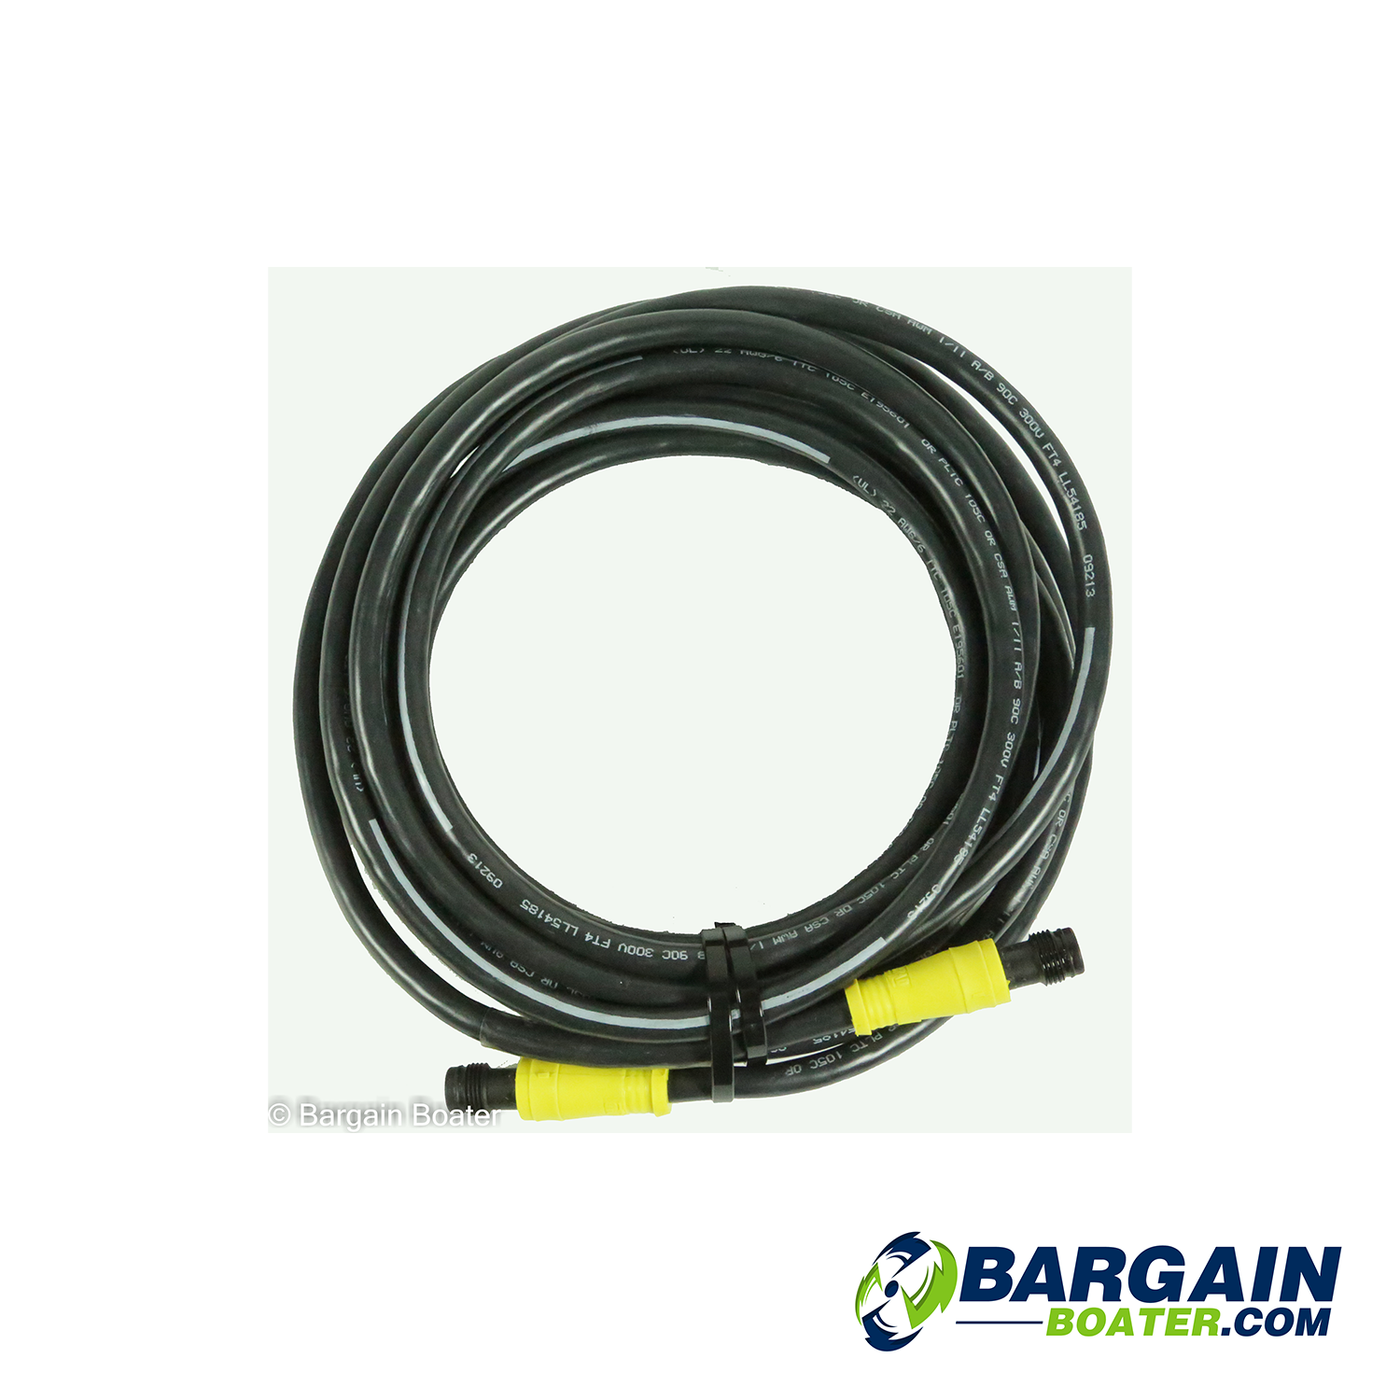 Evinrude G2 - ICON II Backbone Cable - 587173, 587174, 583175